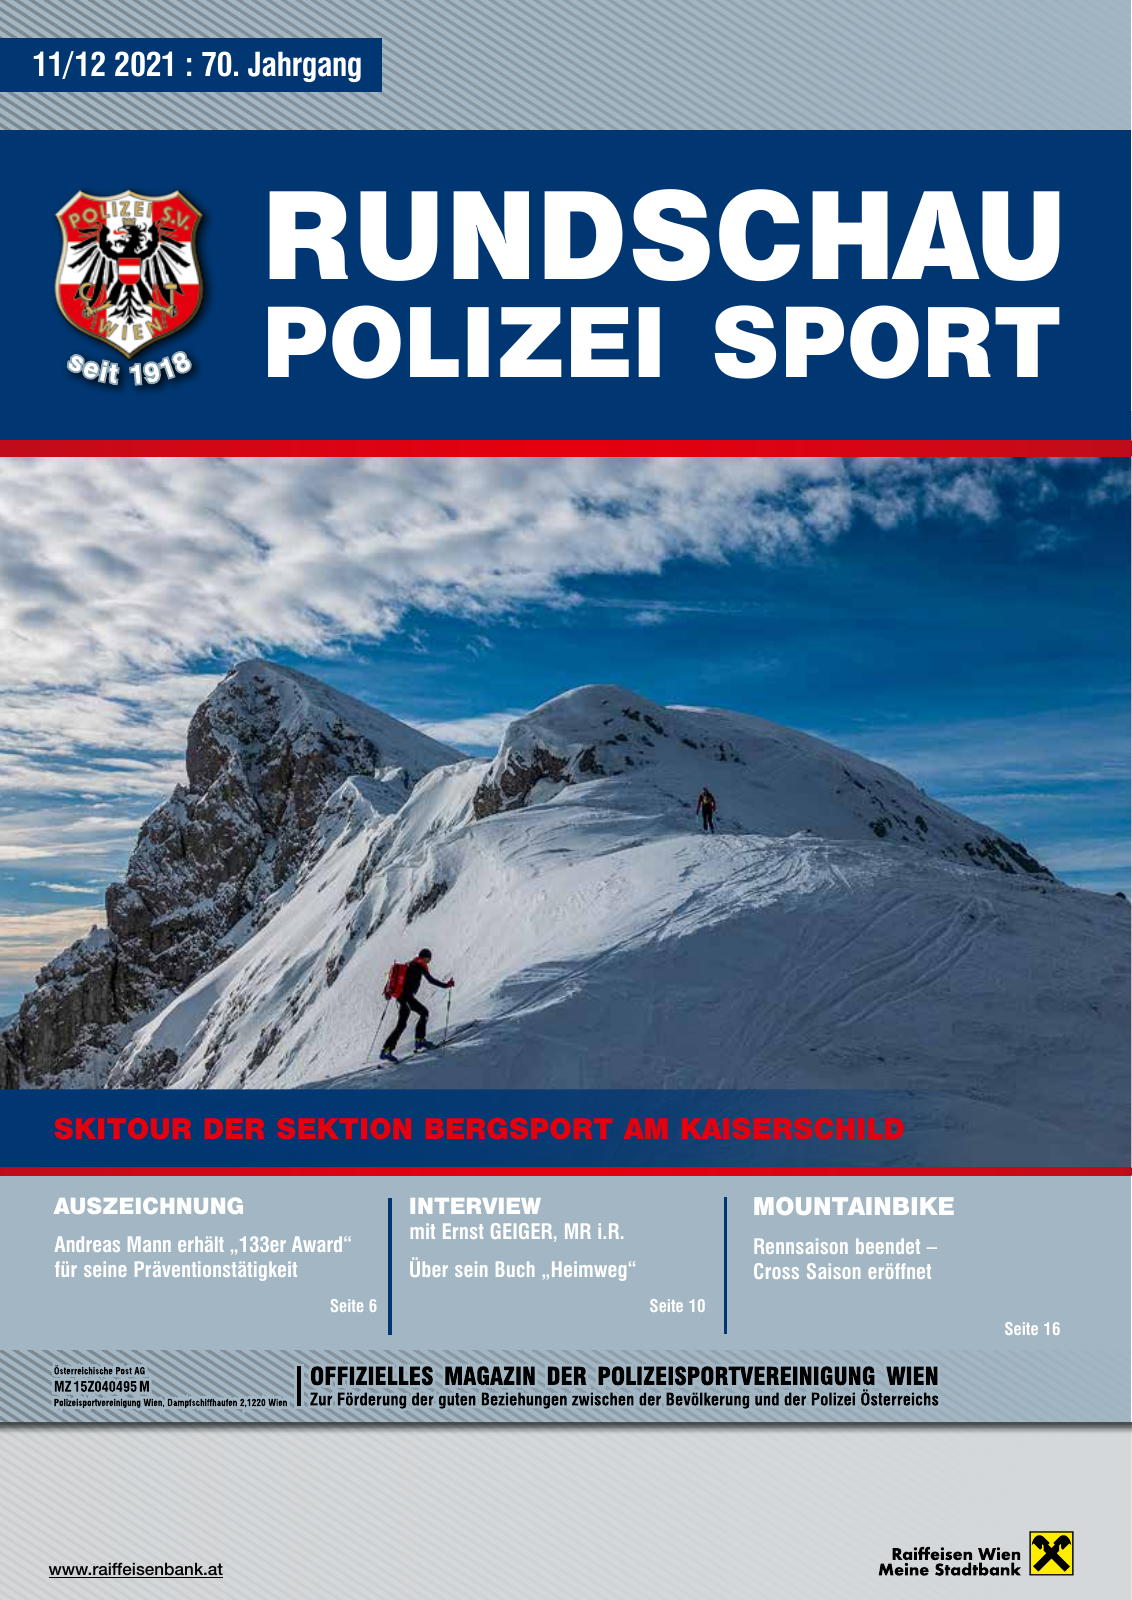 Vorschau Rundschau Polizei Sport 11-12/2021 Seite 1